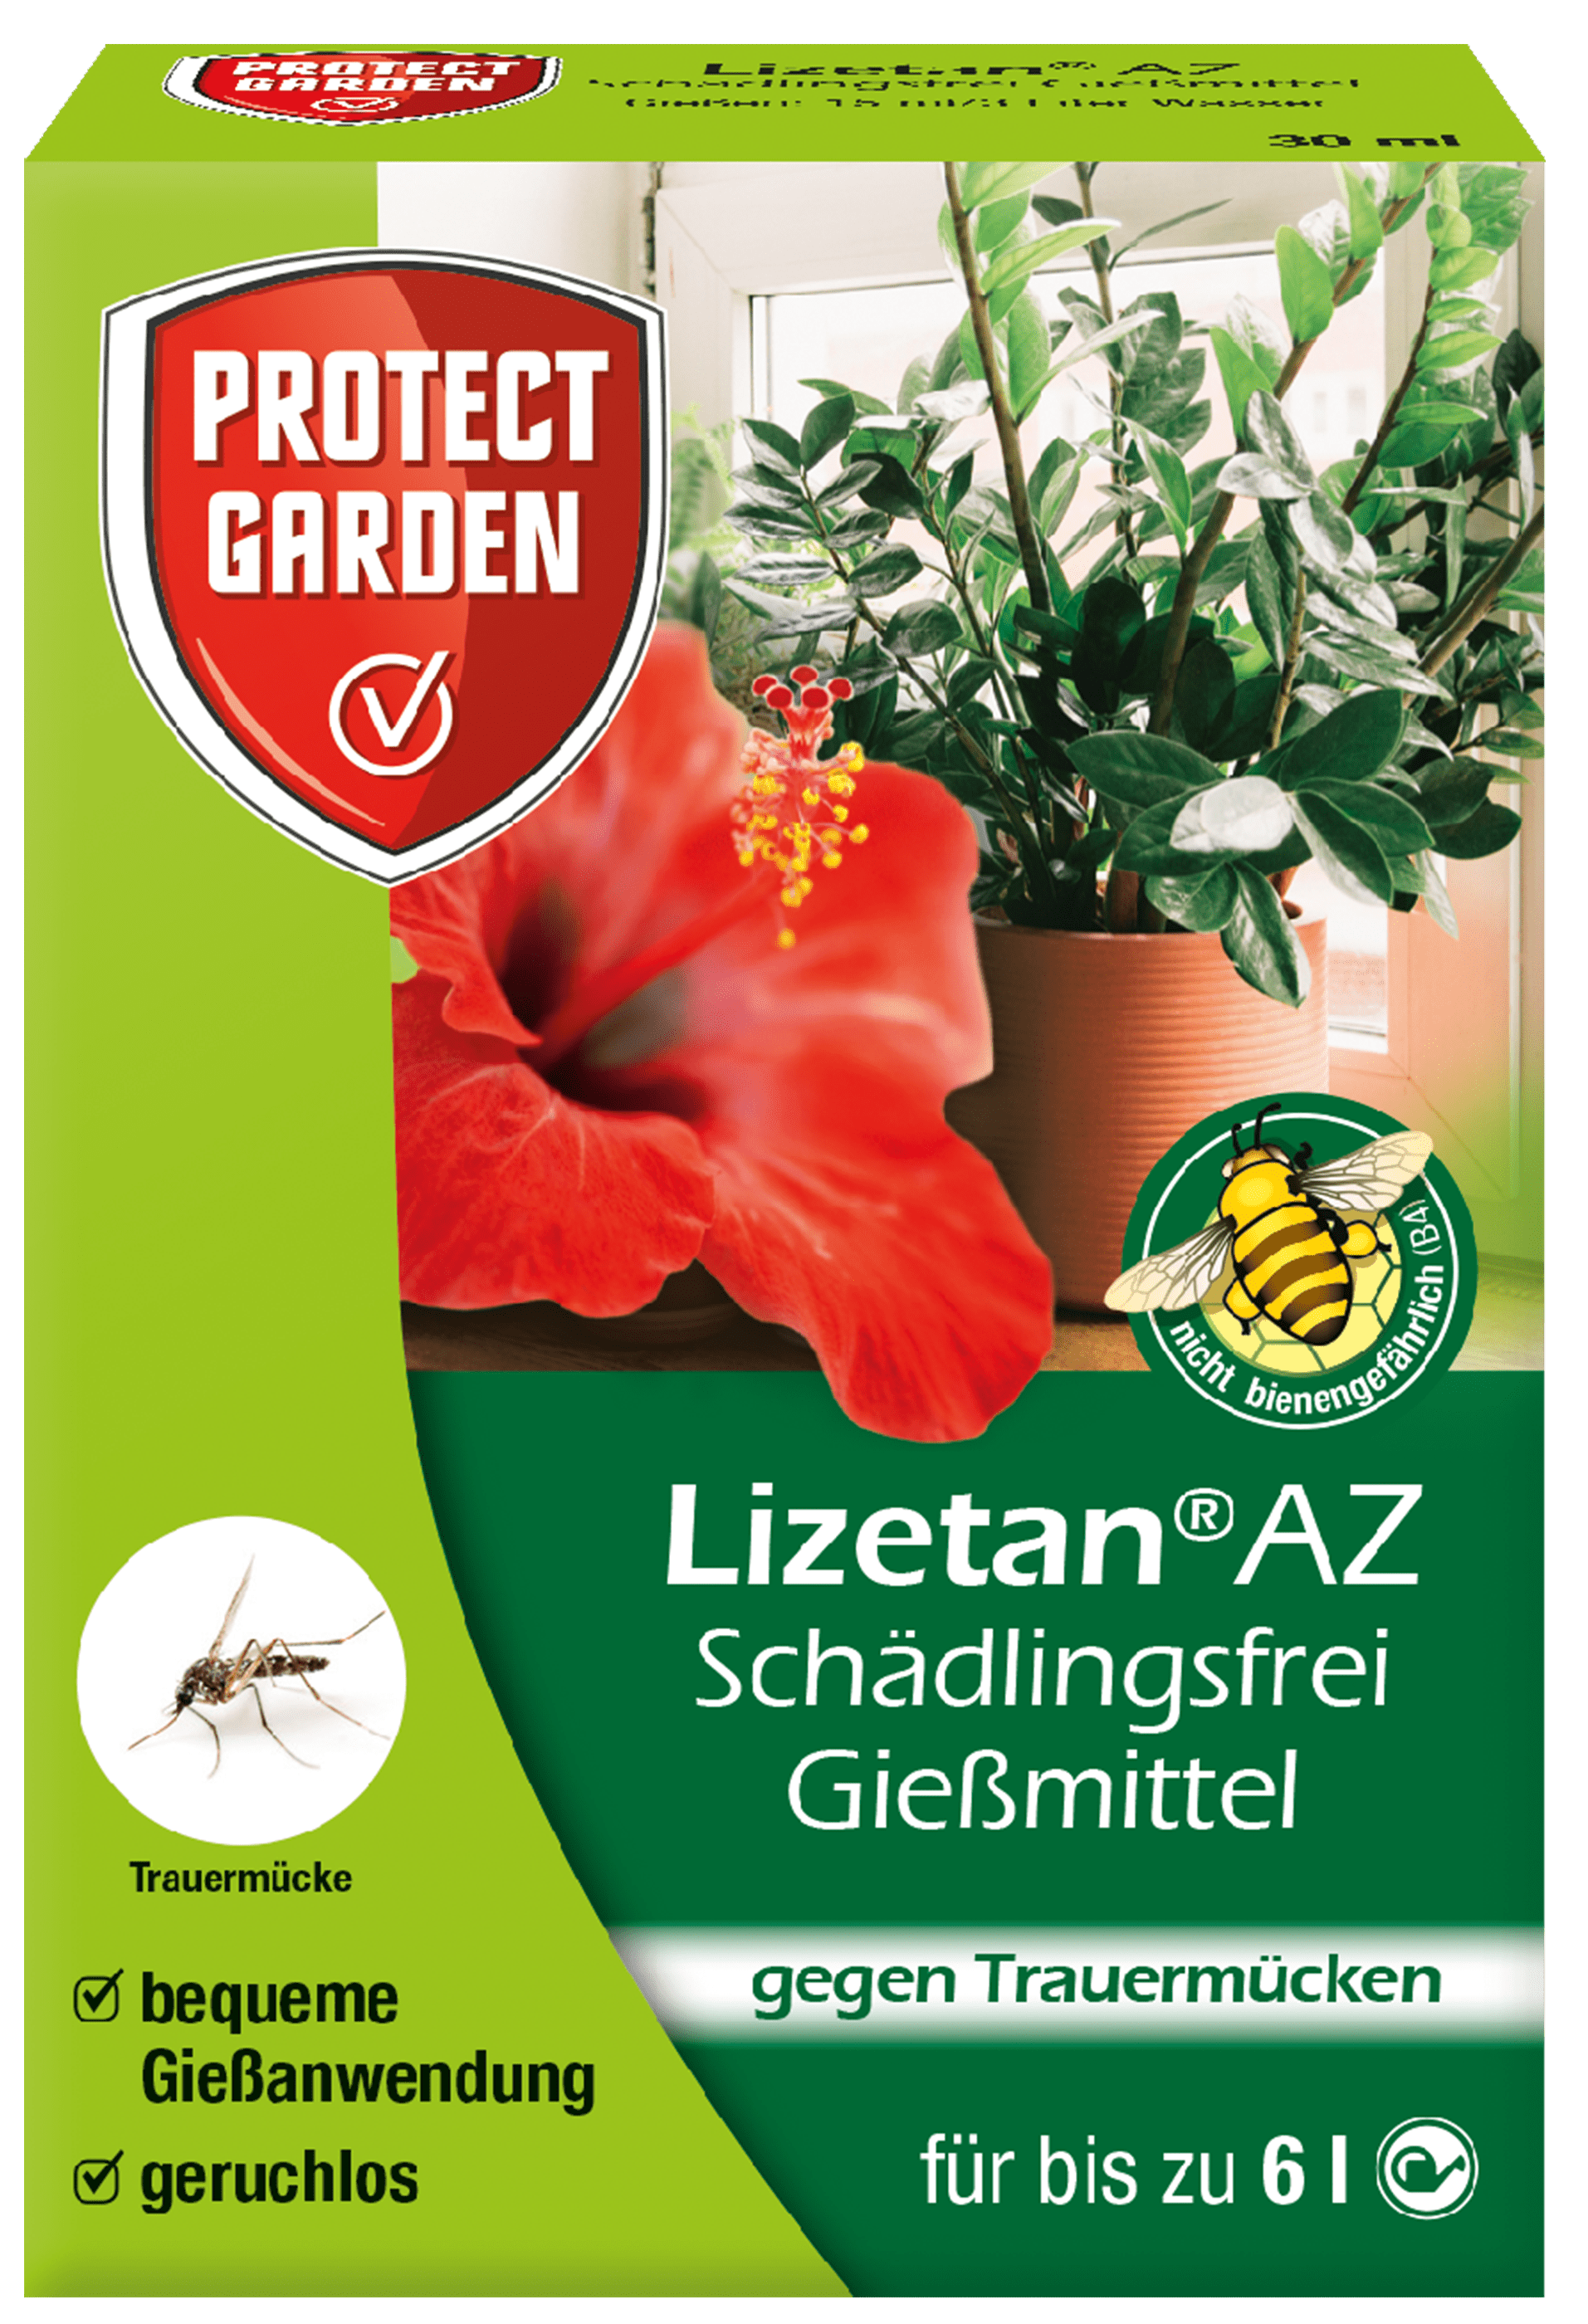 Protect Garden Lizetan AZ Schädlingsfrei Gießmittel 30 ml 